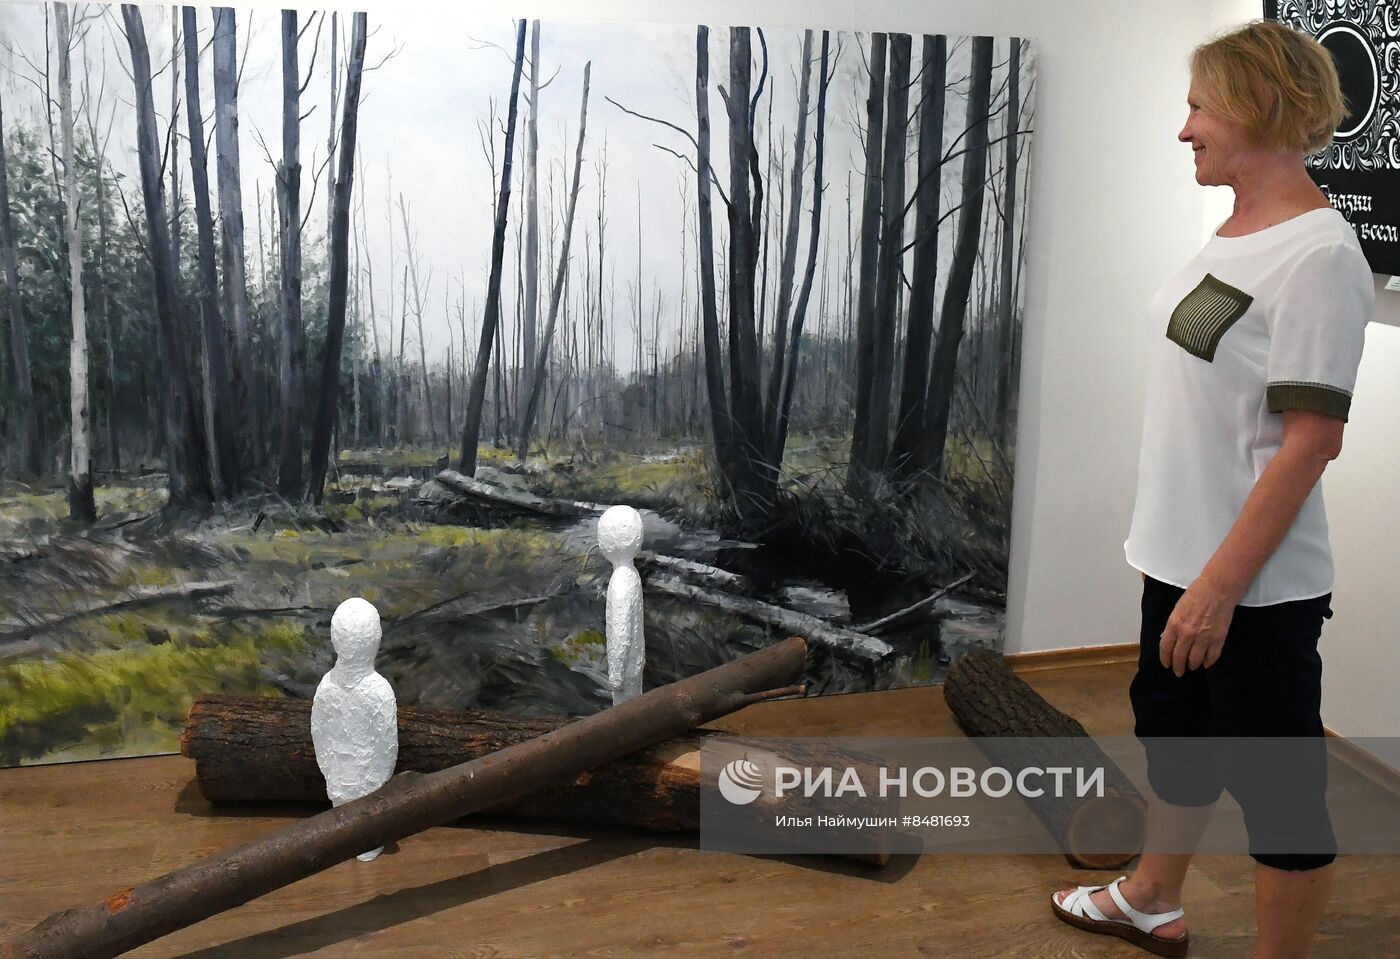 Выставка "Всякие сказки" в Красноярске